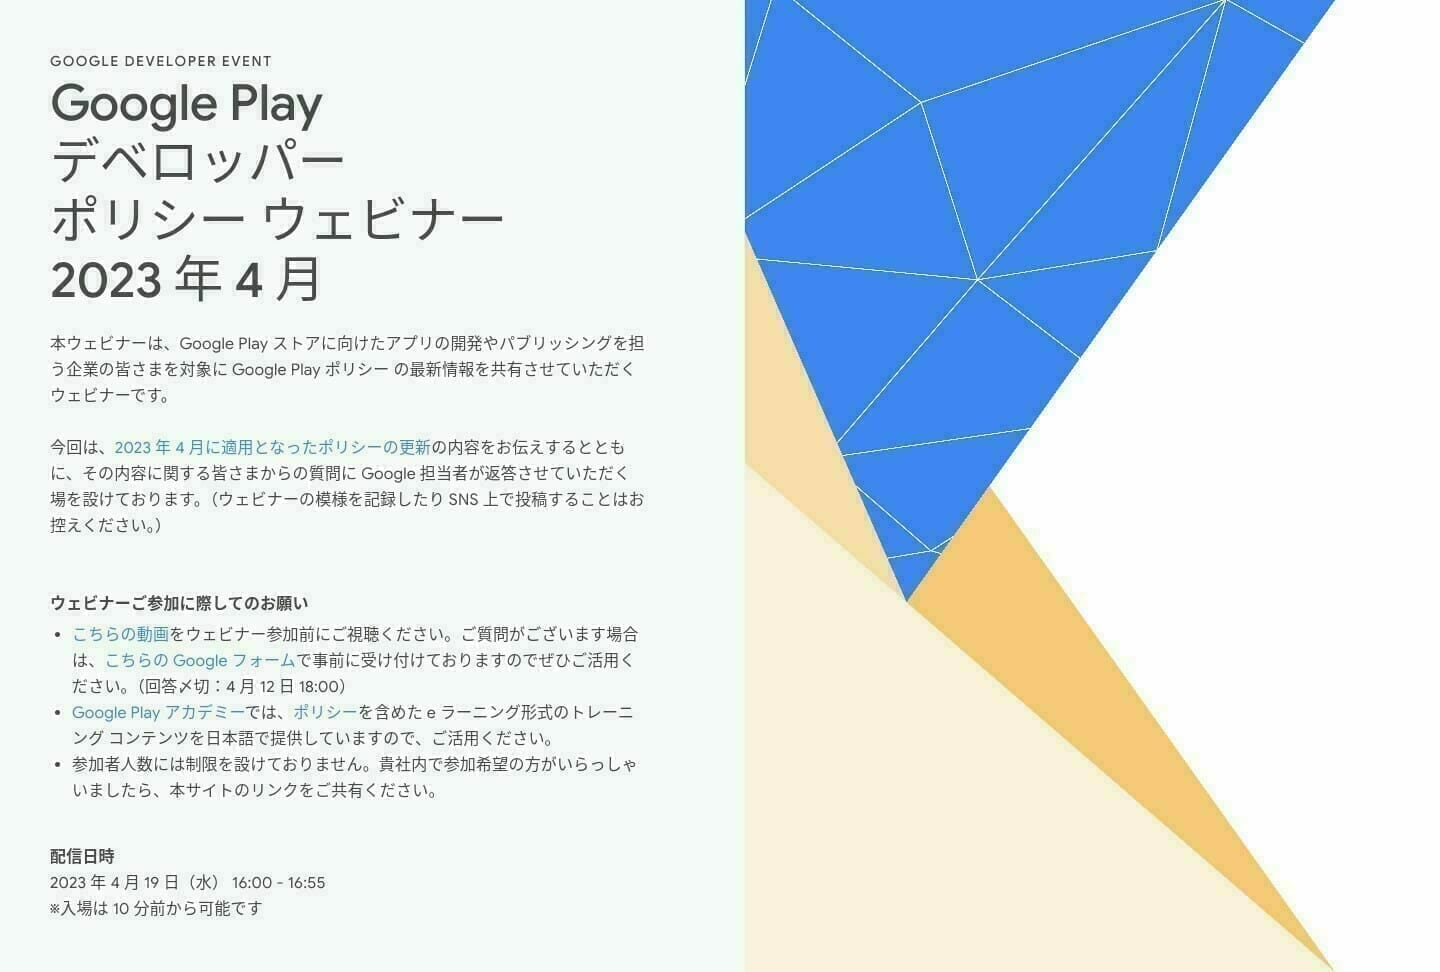 「Google Developers] Google Play デベロッパー ポリシー ウェビナー 2023 年 4 月